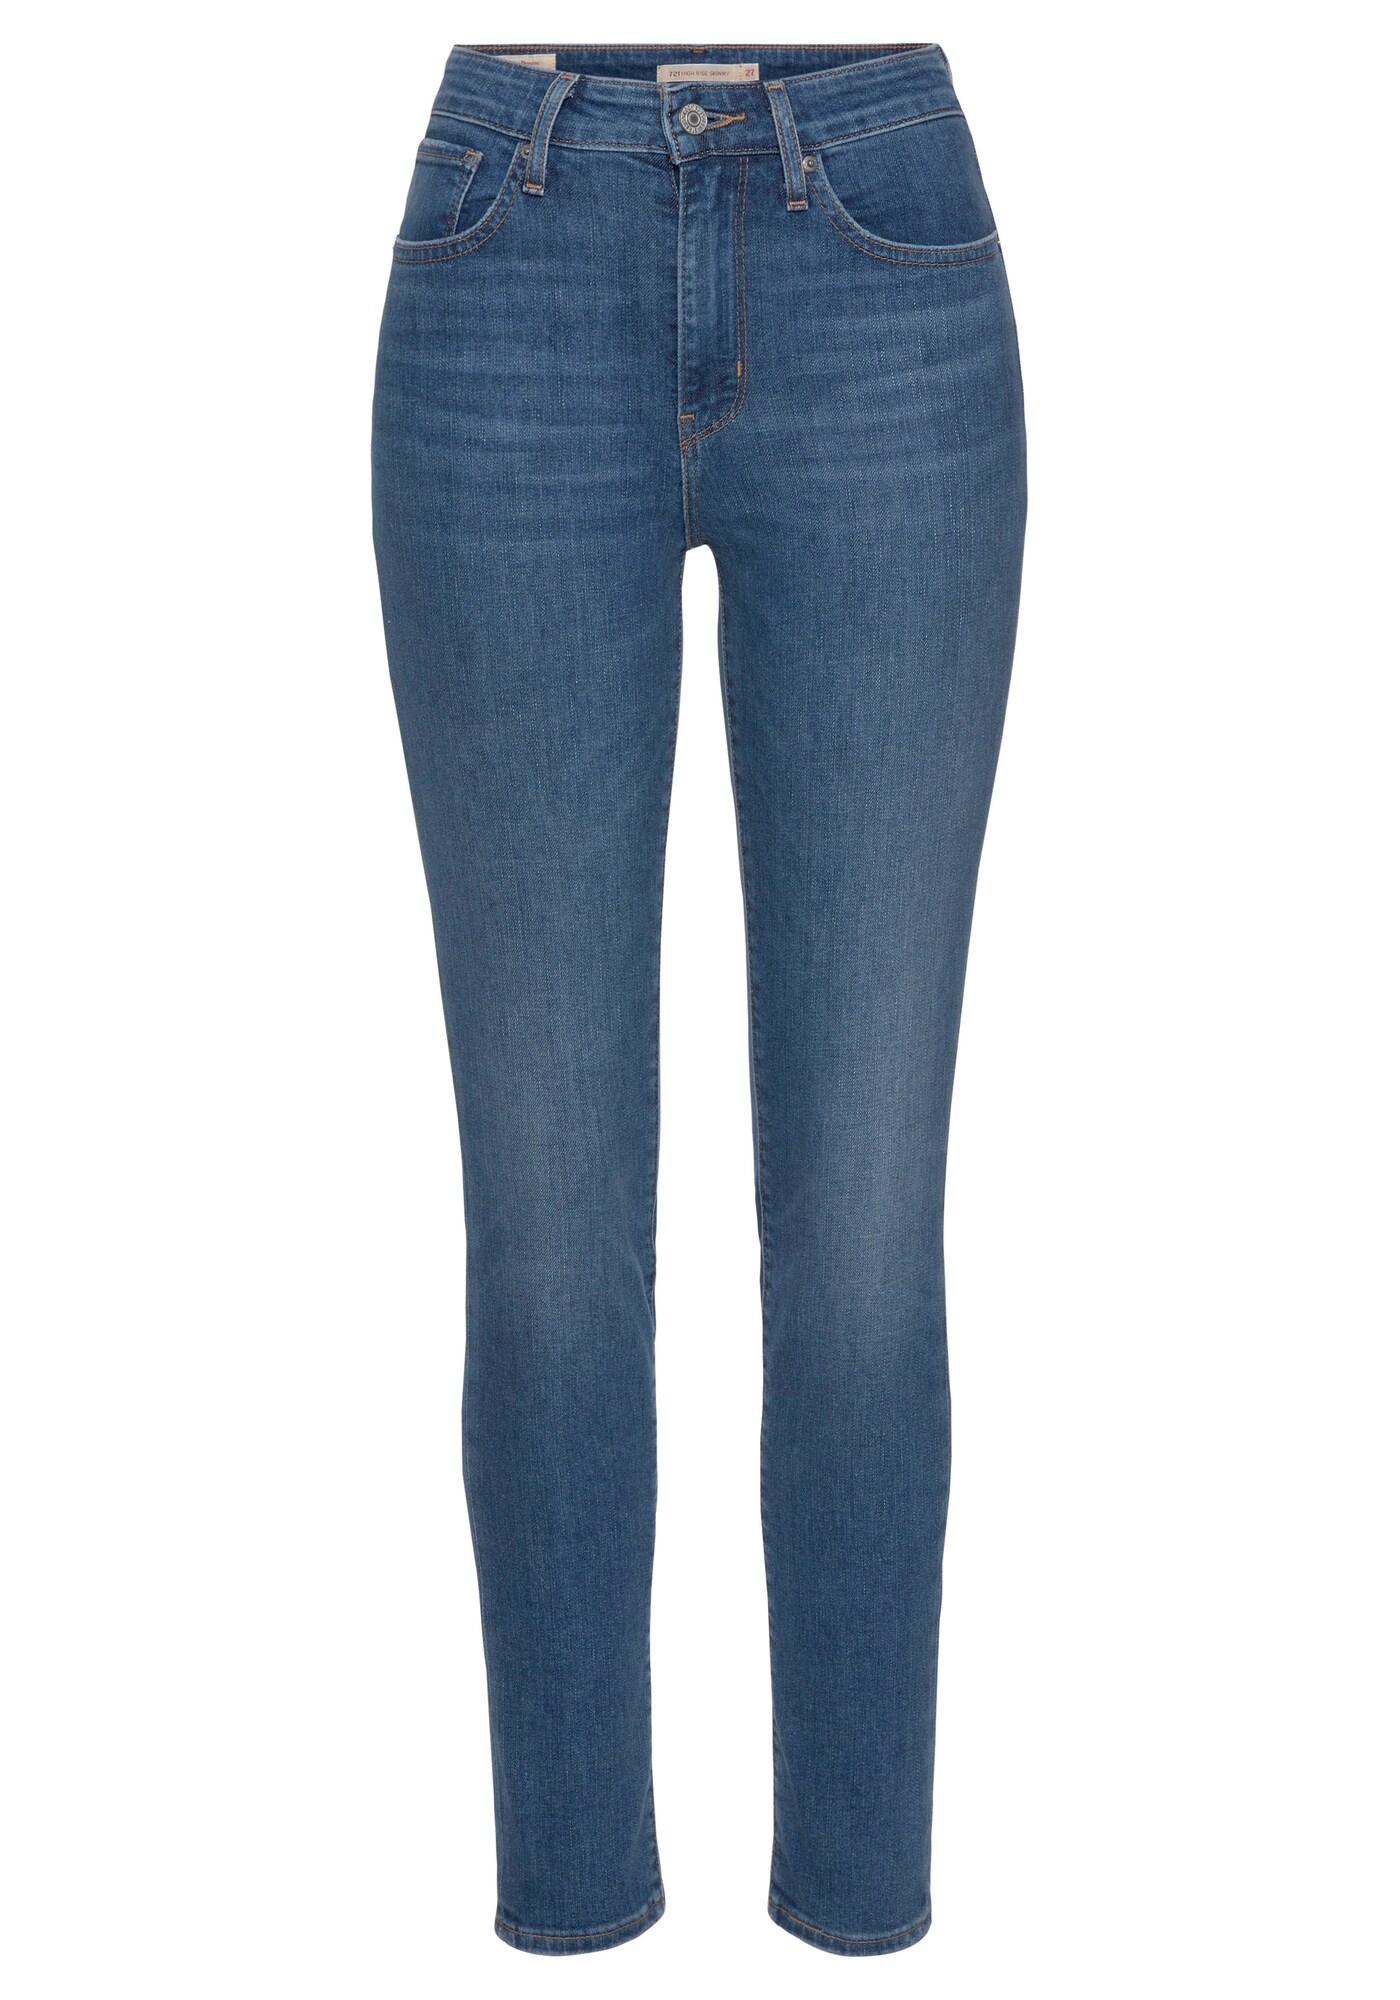 Jeans '721' von Levis